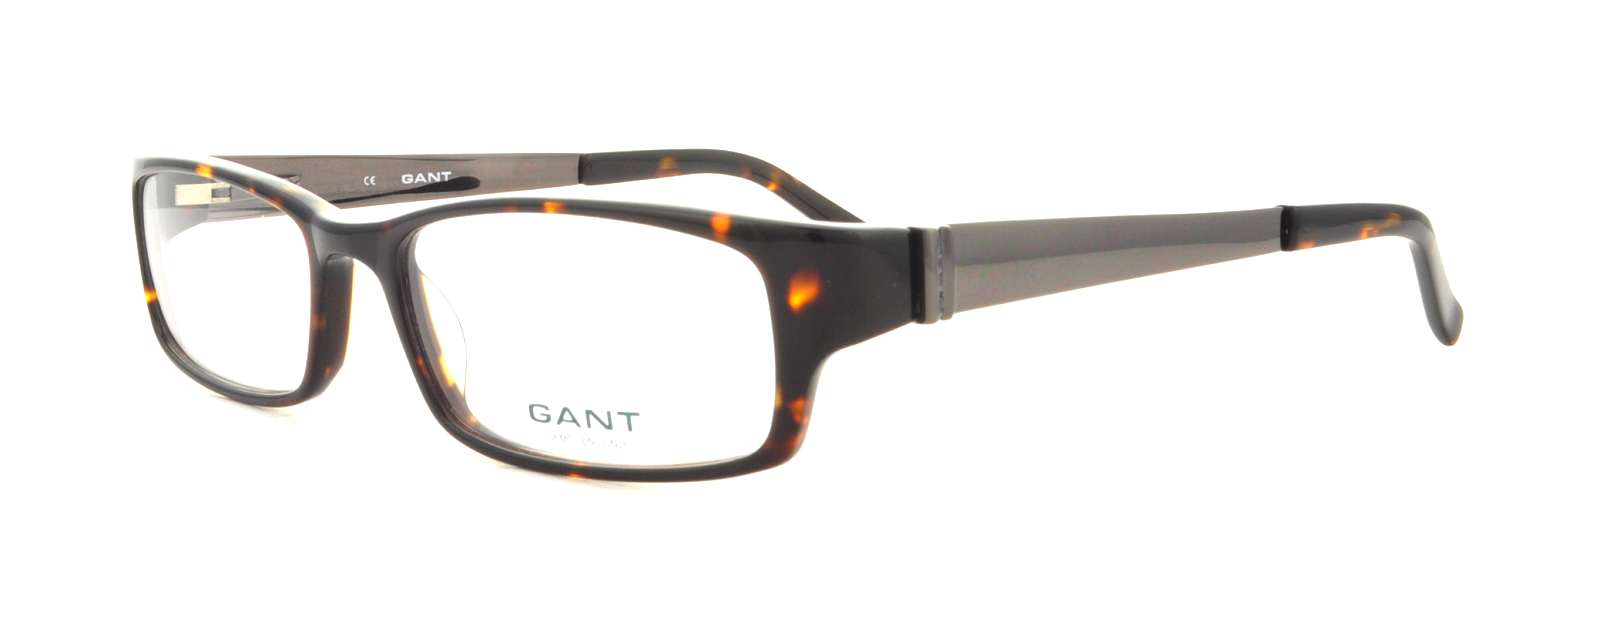 Picture of Gant Eyeglasses G HEWITT